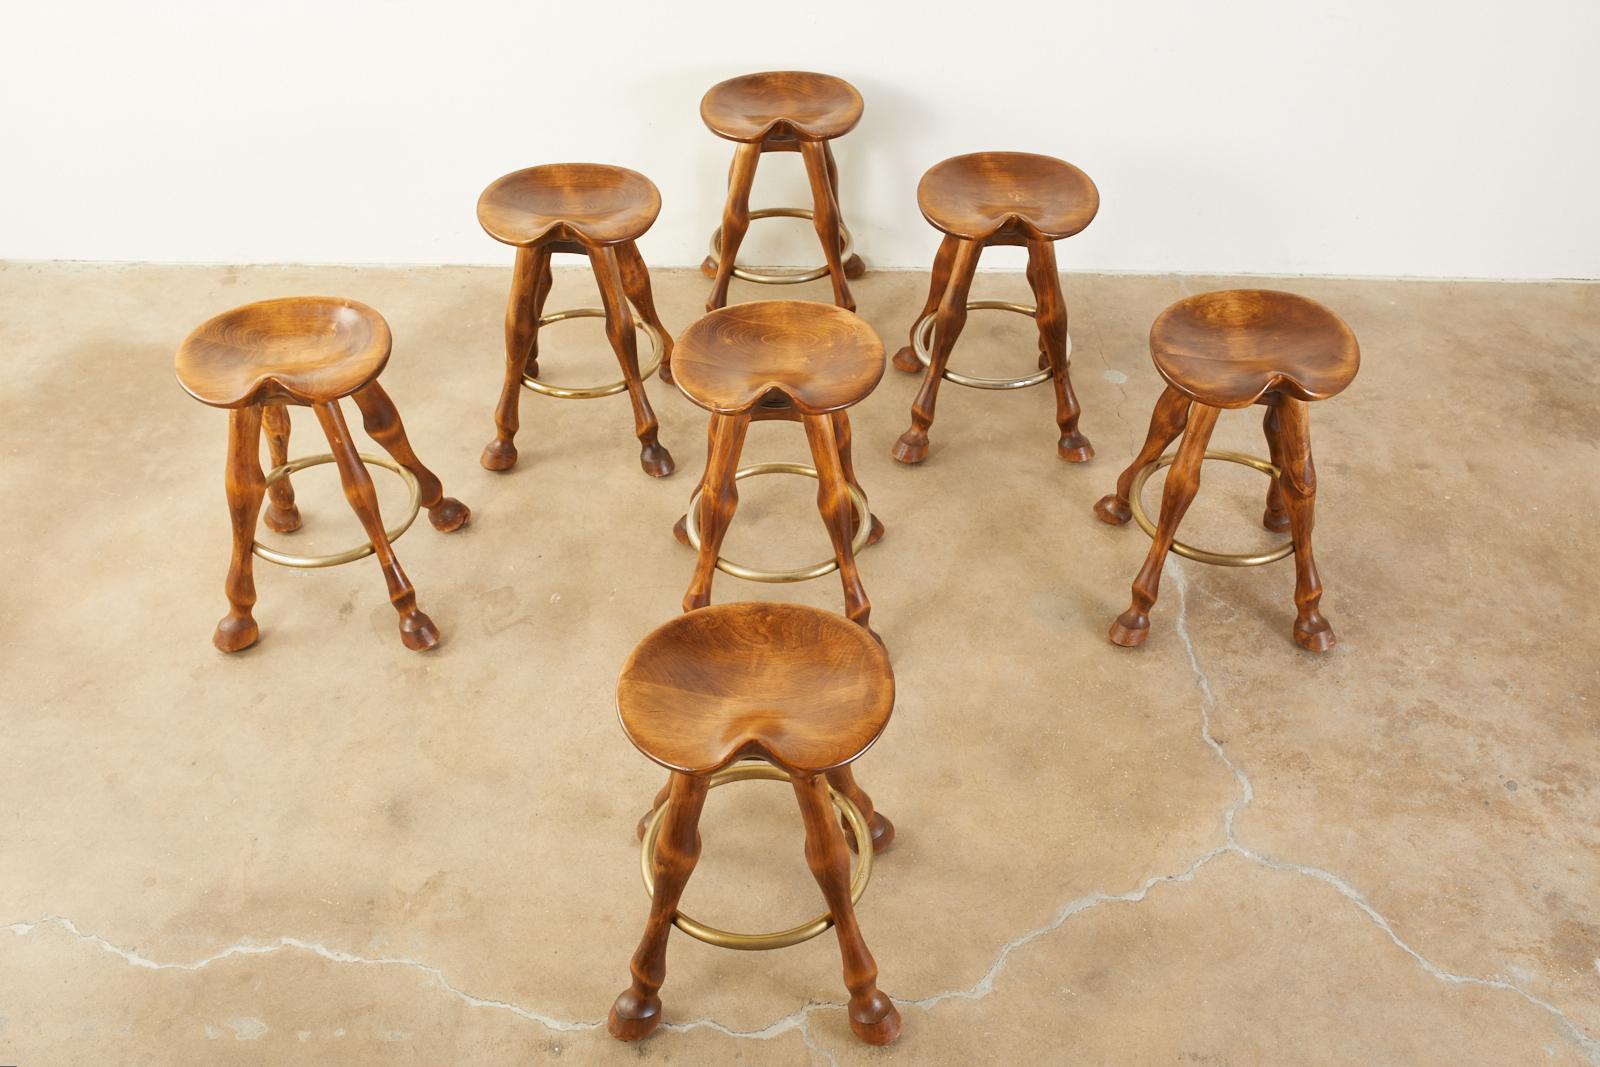 saddle shaped bar stools